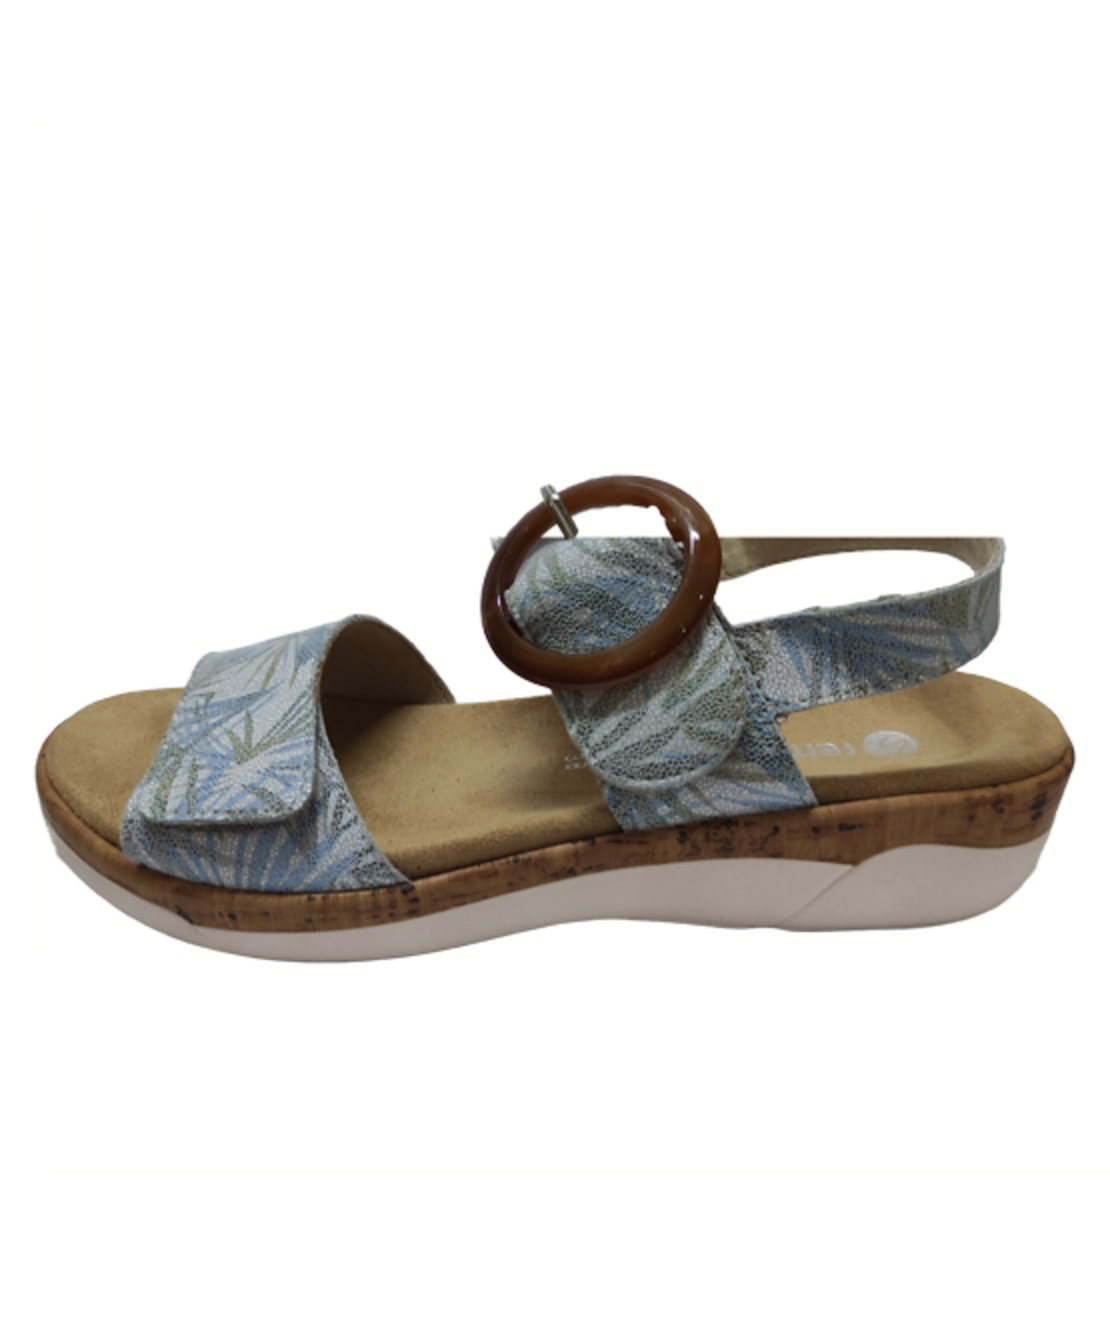 Remonte Sandals - R6853-92 - Women